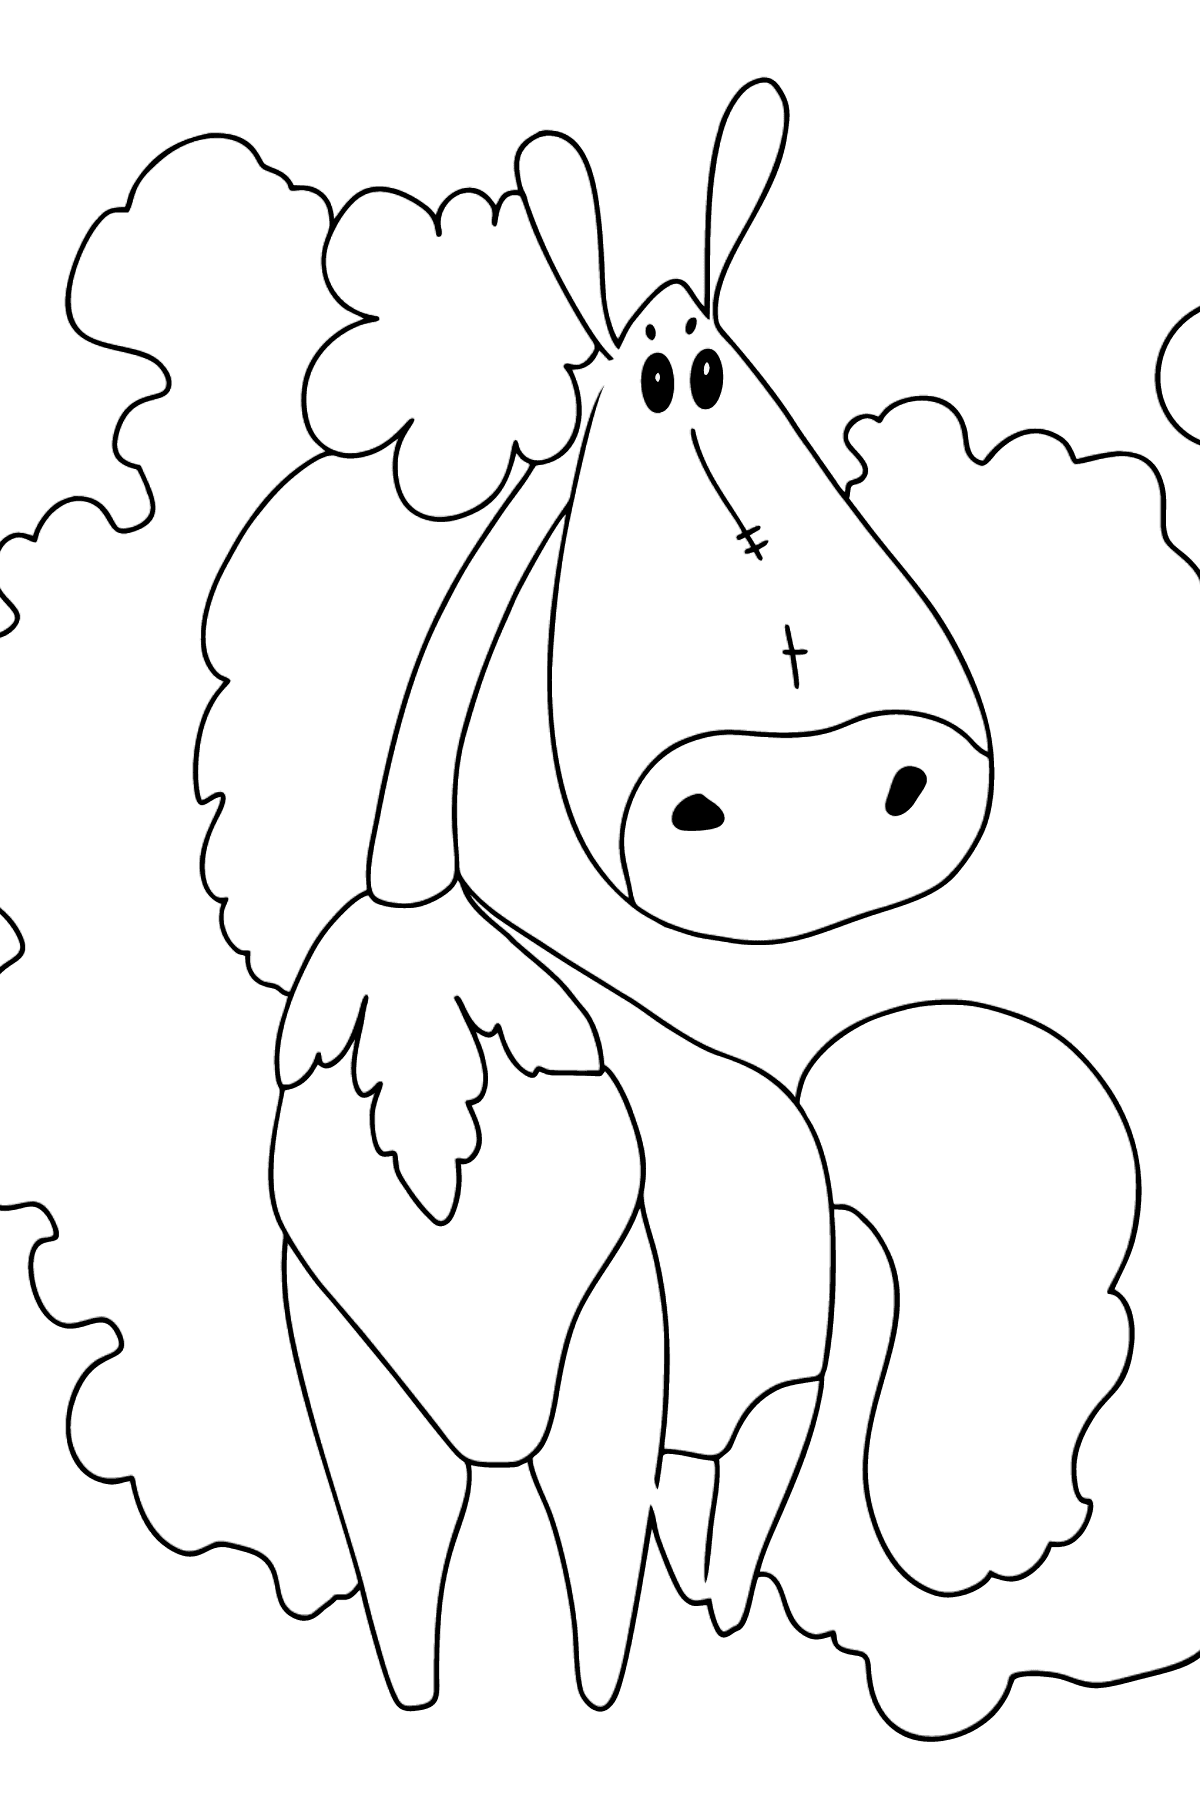 Розмальовка кінь модниці (просто) - Розмальовки для дітей